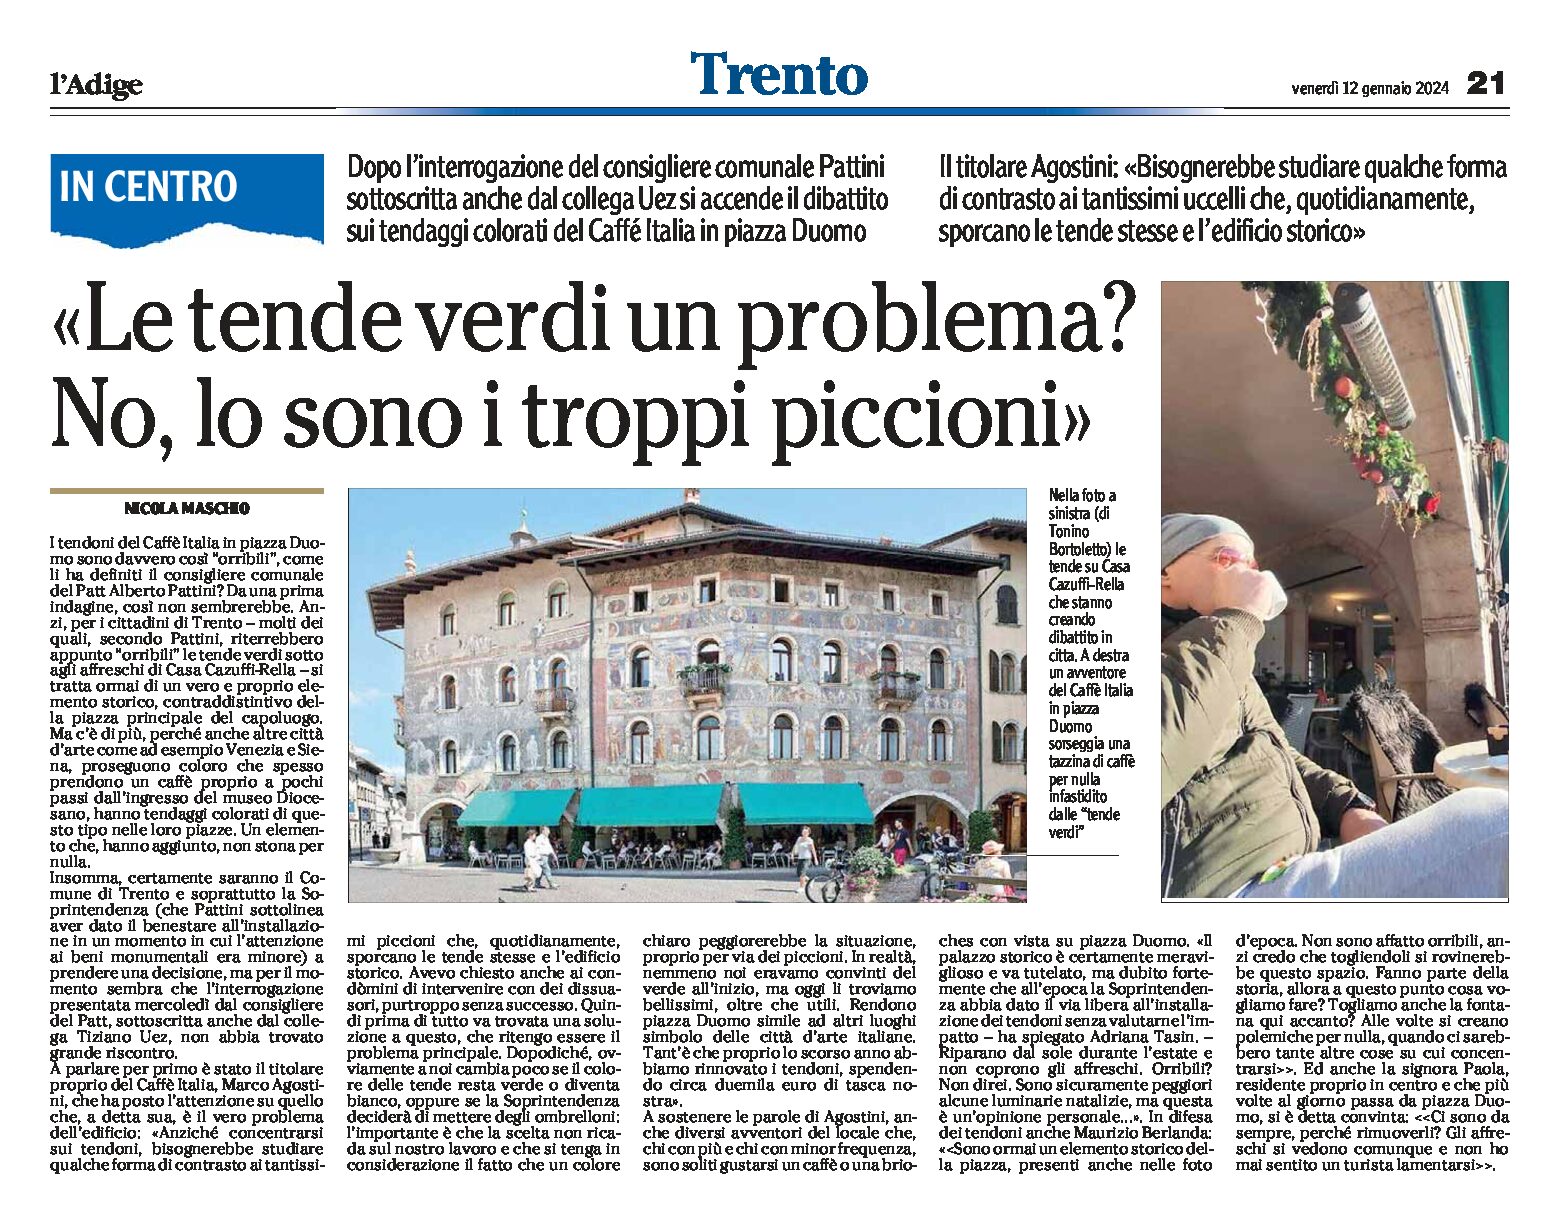 Trento, piazza Duomo: le tende verdi sotto gli affreschi… e i piccioni?